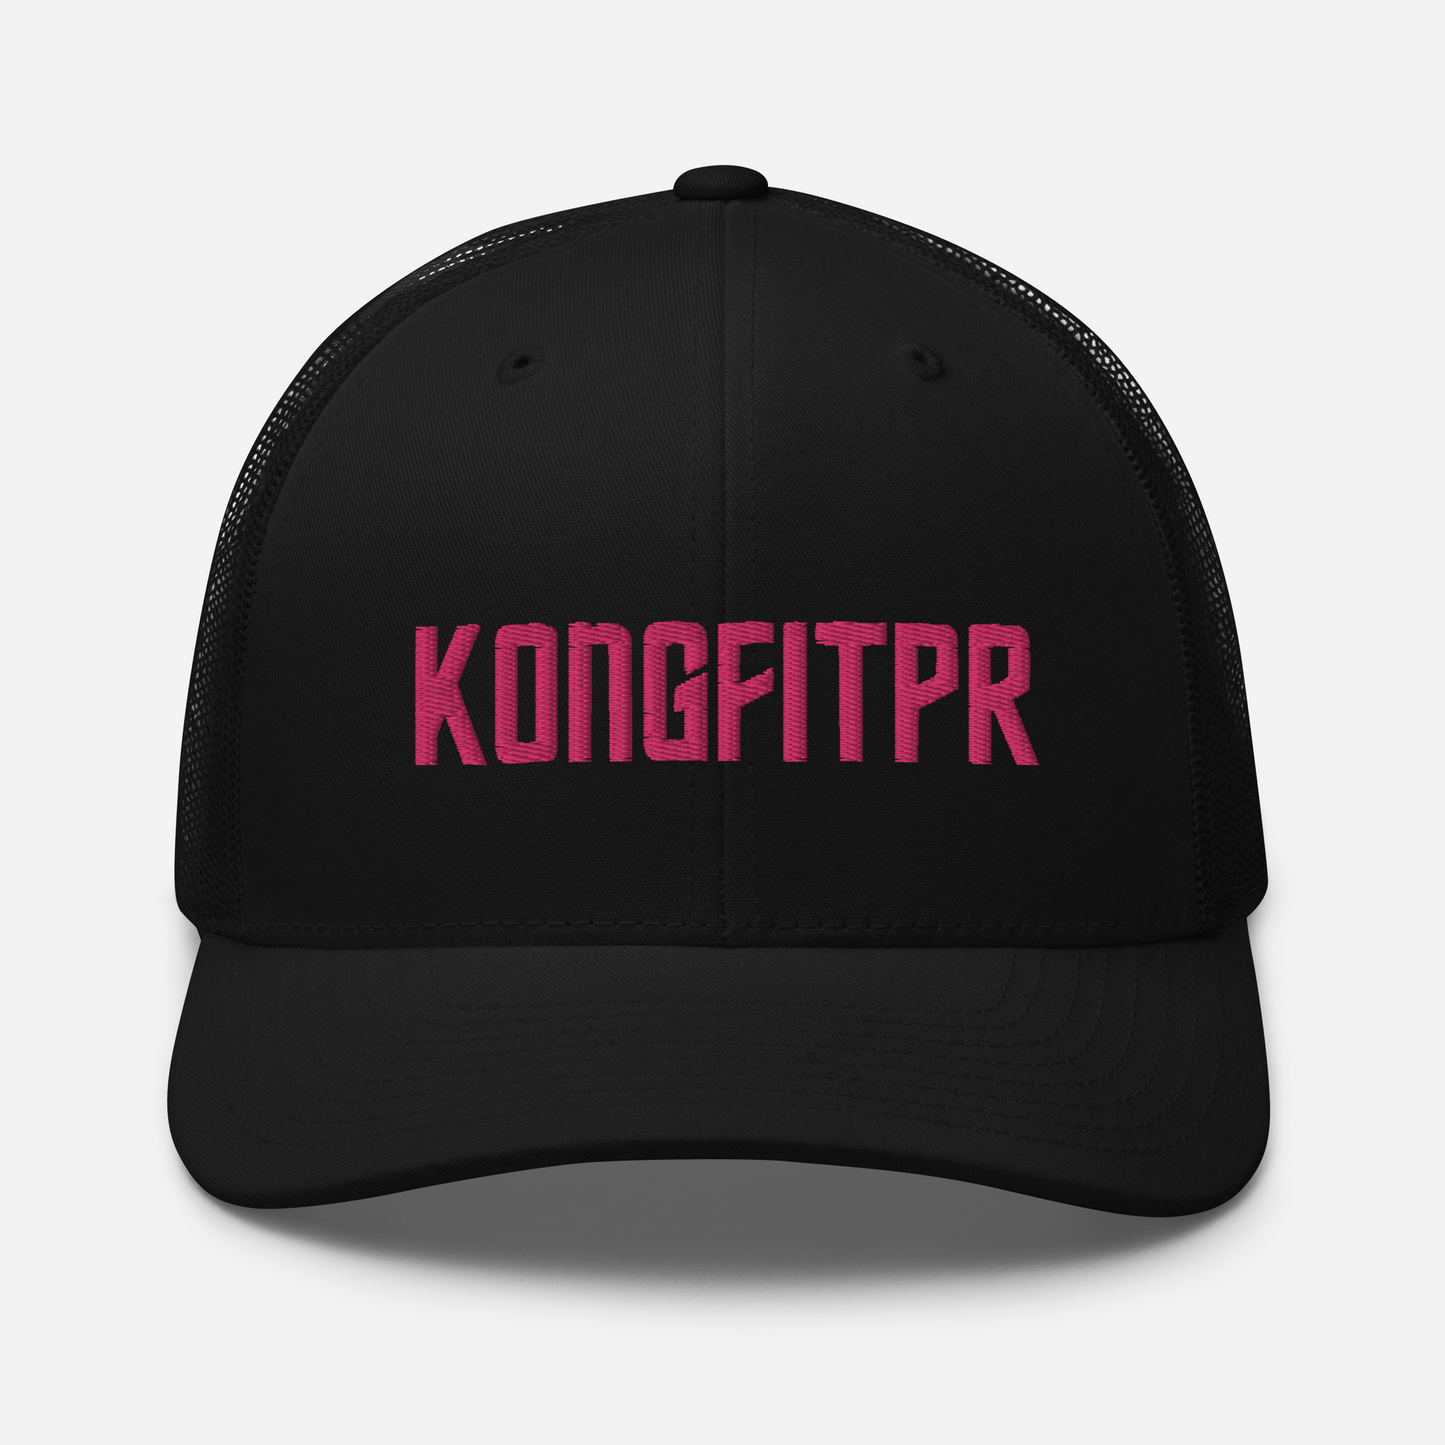 KONGFITPR PINK CAP KFPR